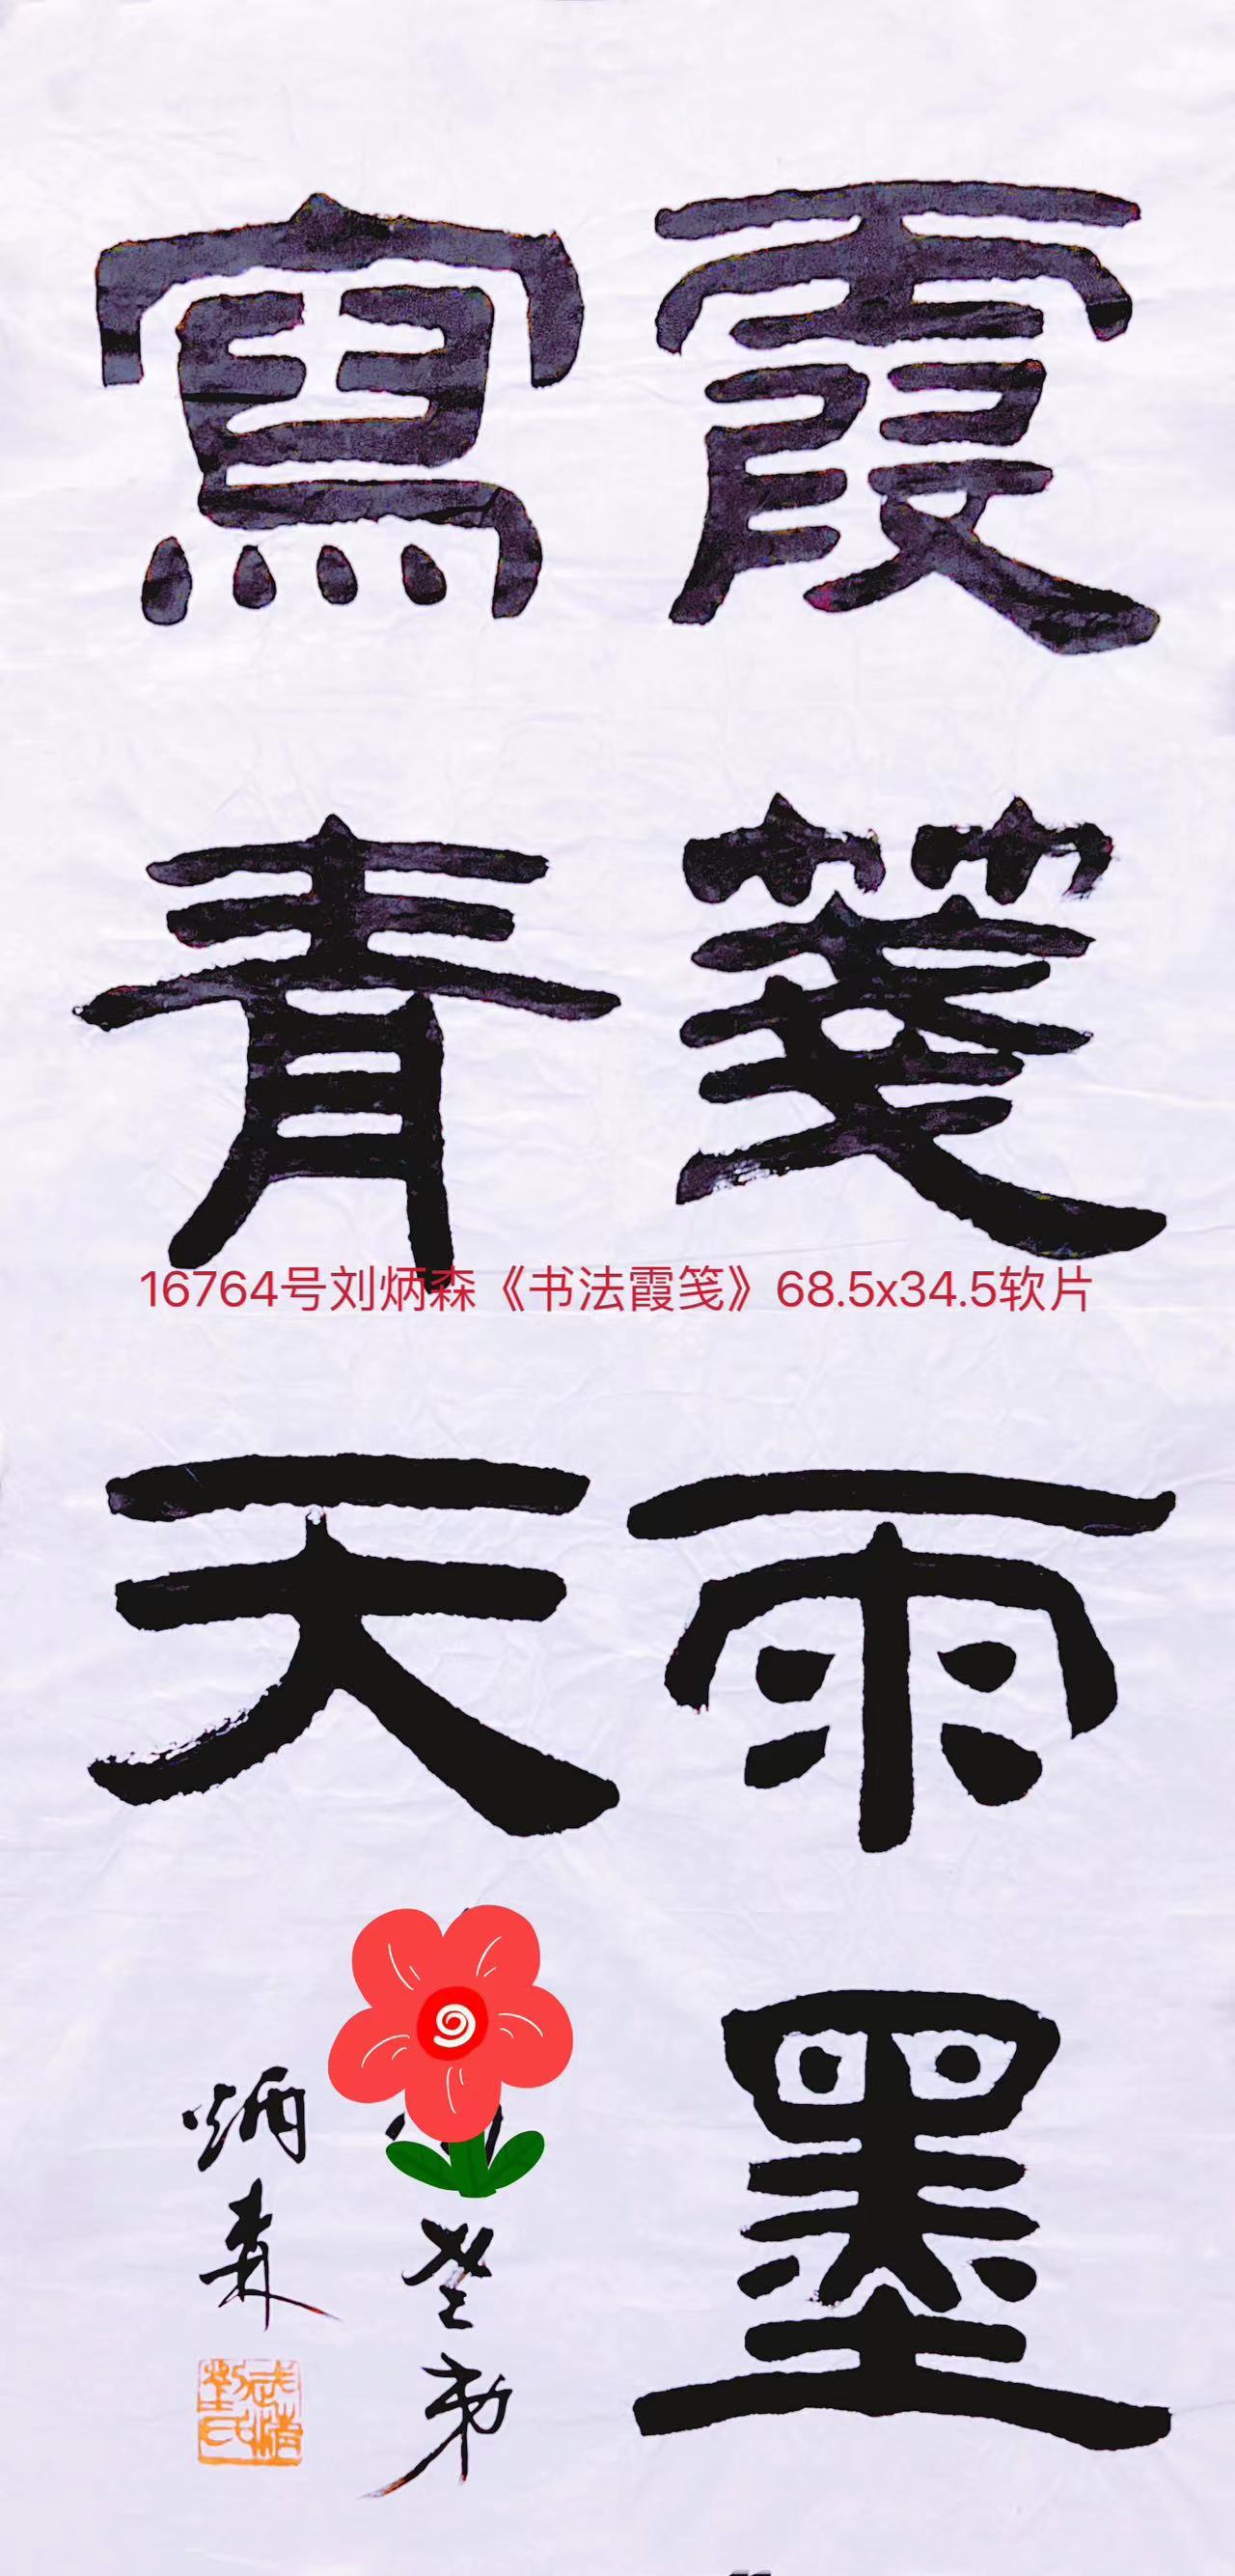 16764号刘炳森《书法霞笺》68.5x34.5软片.jpg